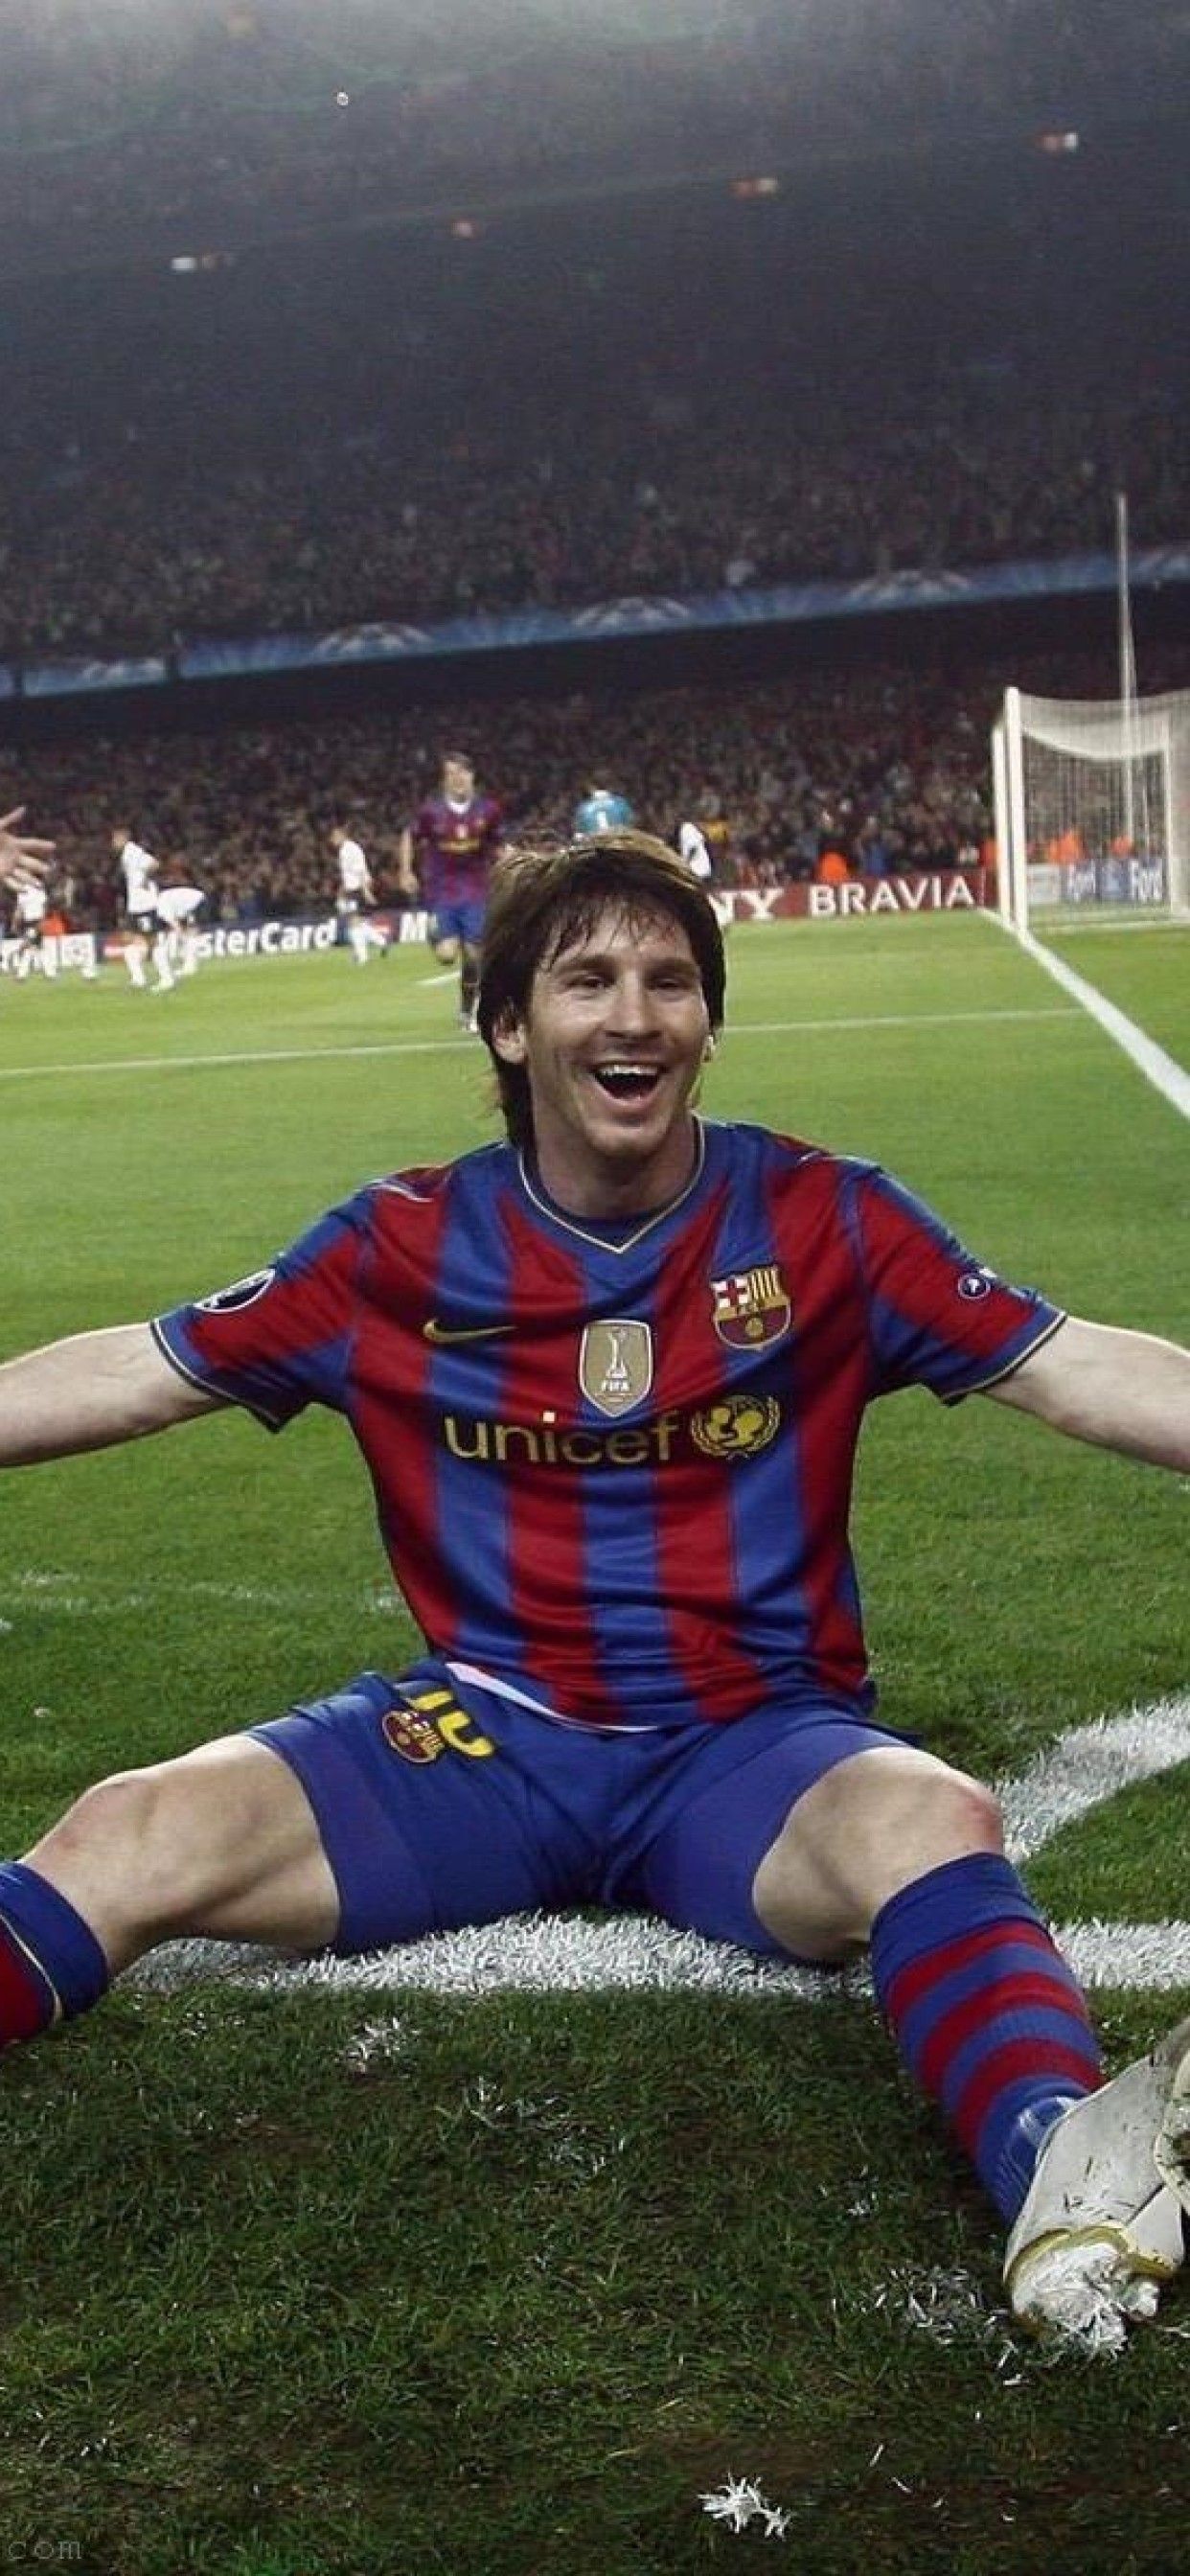 Tạo cảm hứng cho ngày mới của bạn với những hình nền tuyệt đẹp của Lionel Messi. Những hình nền với phong cách thẩm mỹ và ấn tượng của Messi sẽ đem đến cho bạn sự thư giãn và cảm giác tuyệt vời.